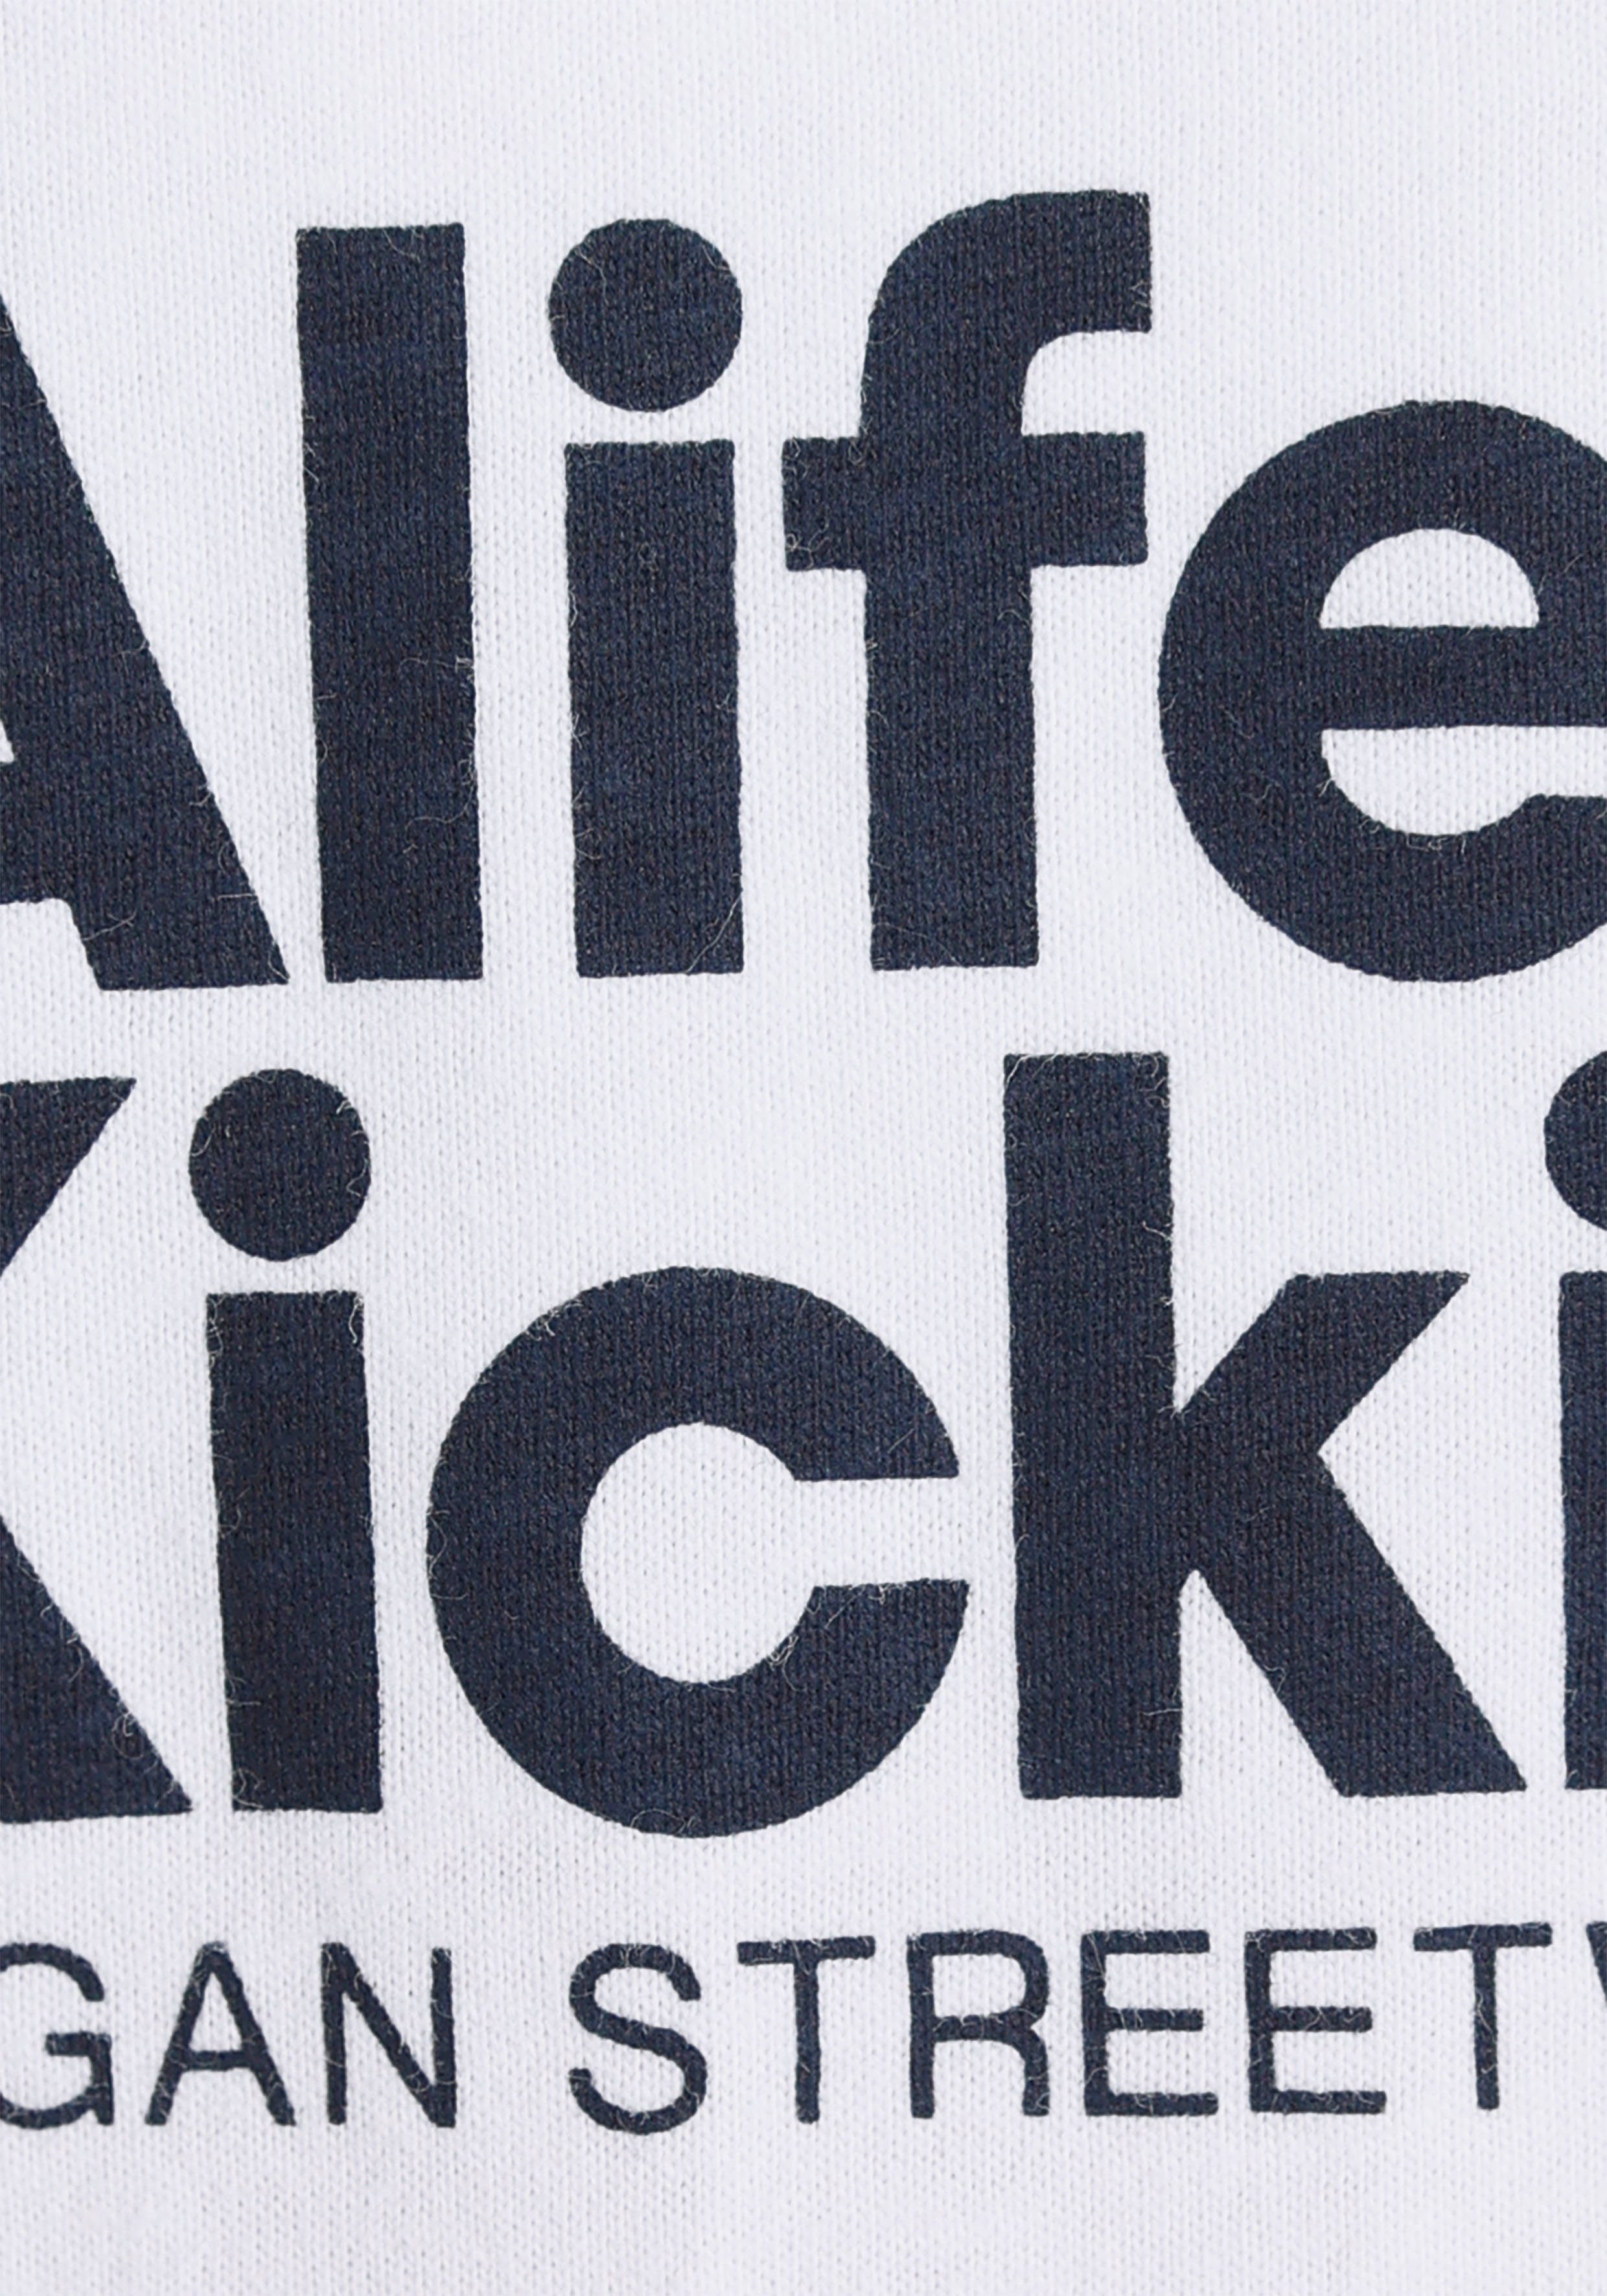 Alife & Kickin & Logo für Kickin T-Shirt MARKE! NEUE Kids. Druck, Alife mit